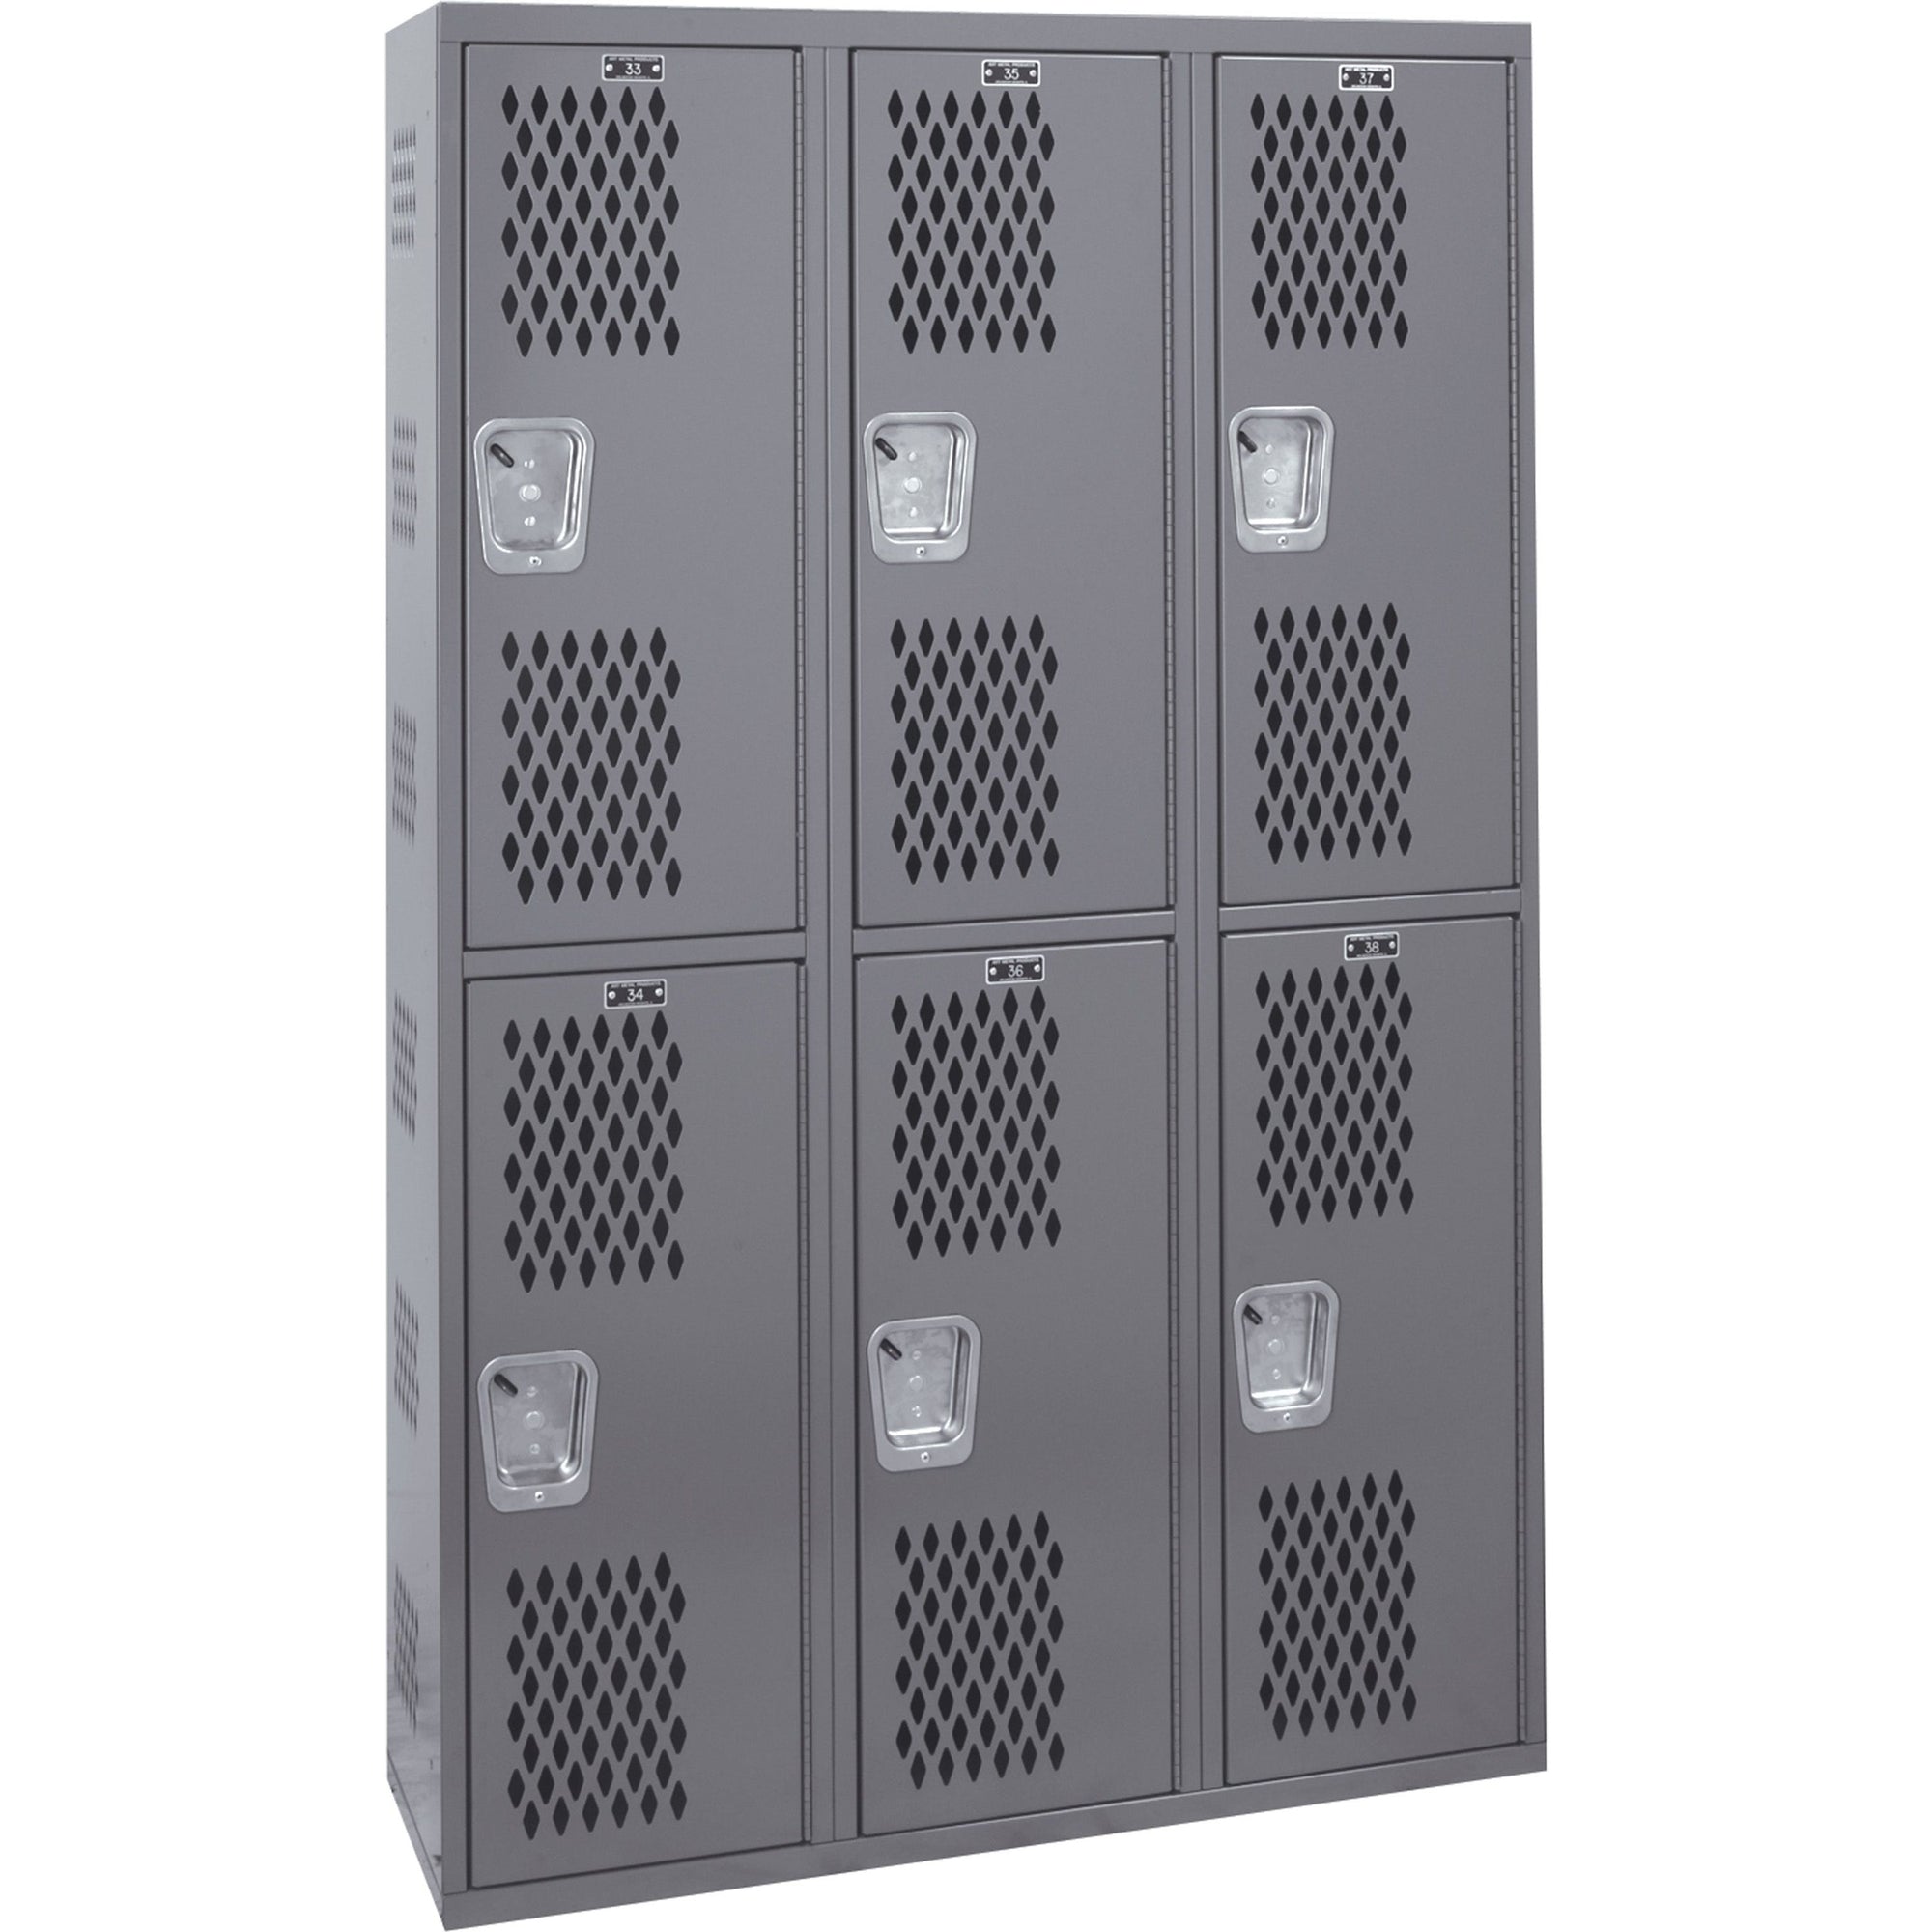 Slate Gray Hallowell Welded Single-Point Ventilated Locker, 36"W x 12"D x 72"H, Double Tier, 3-Wide